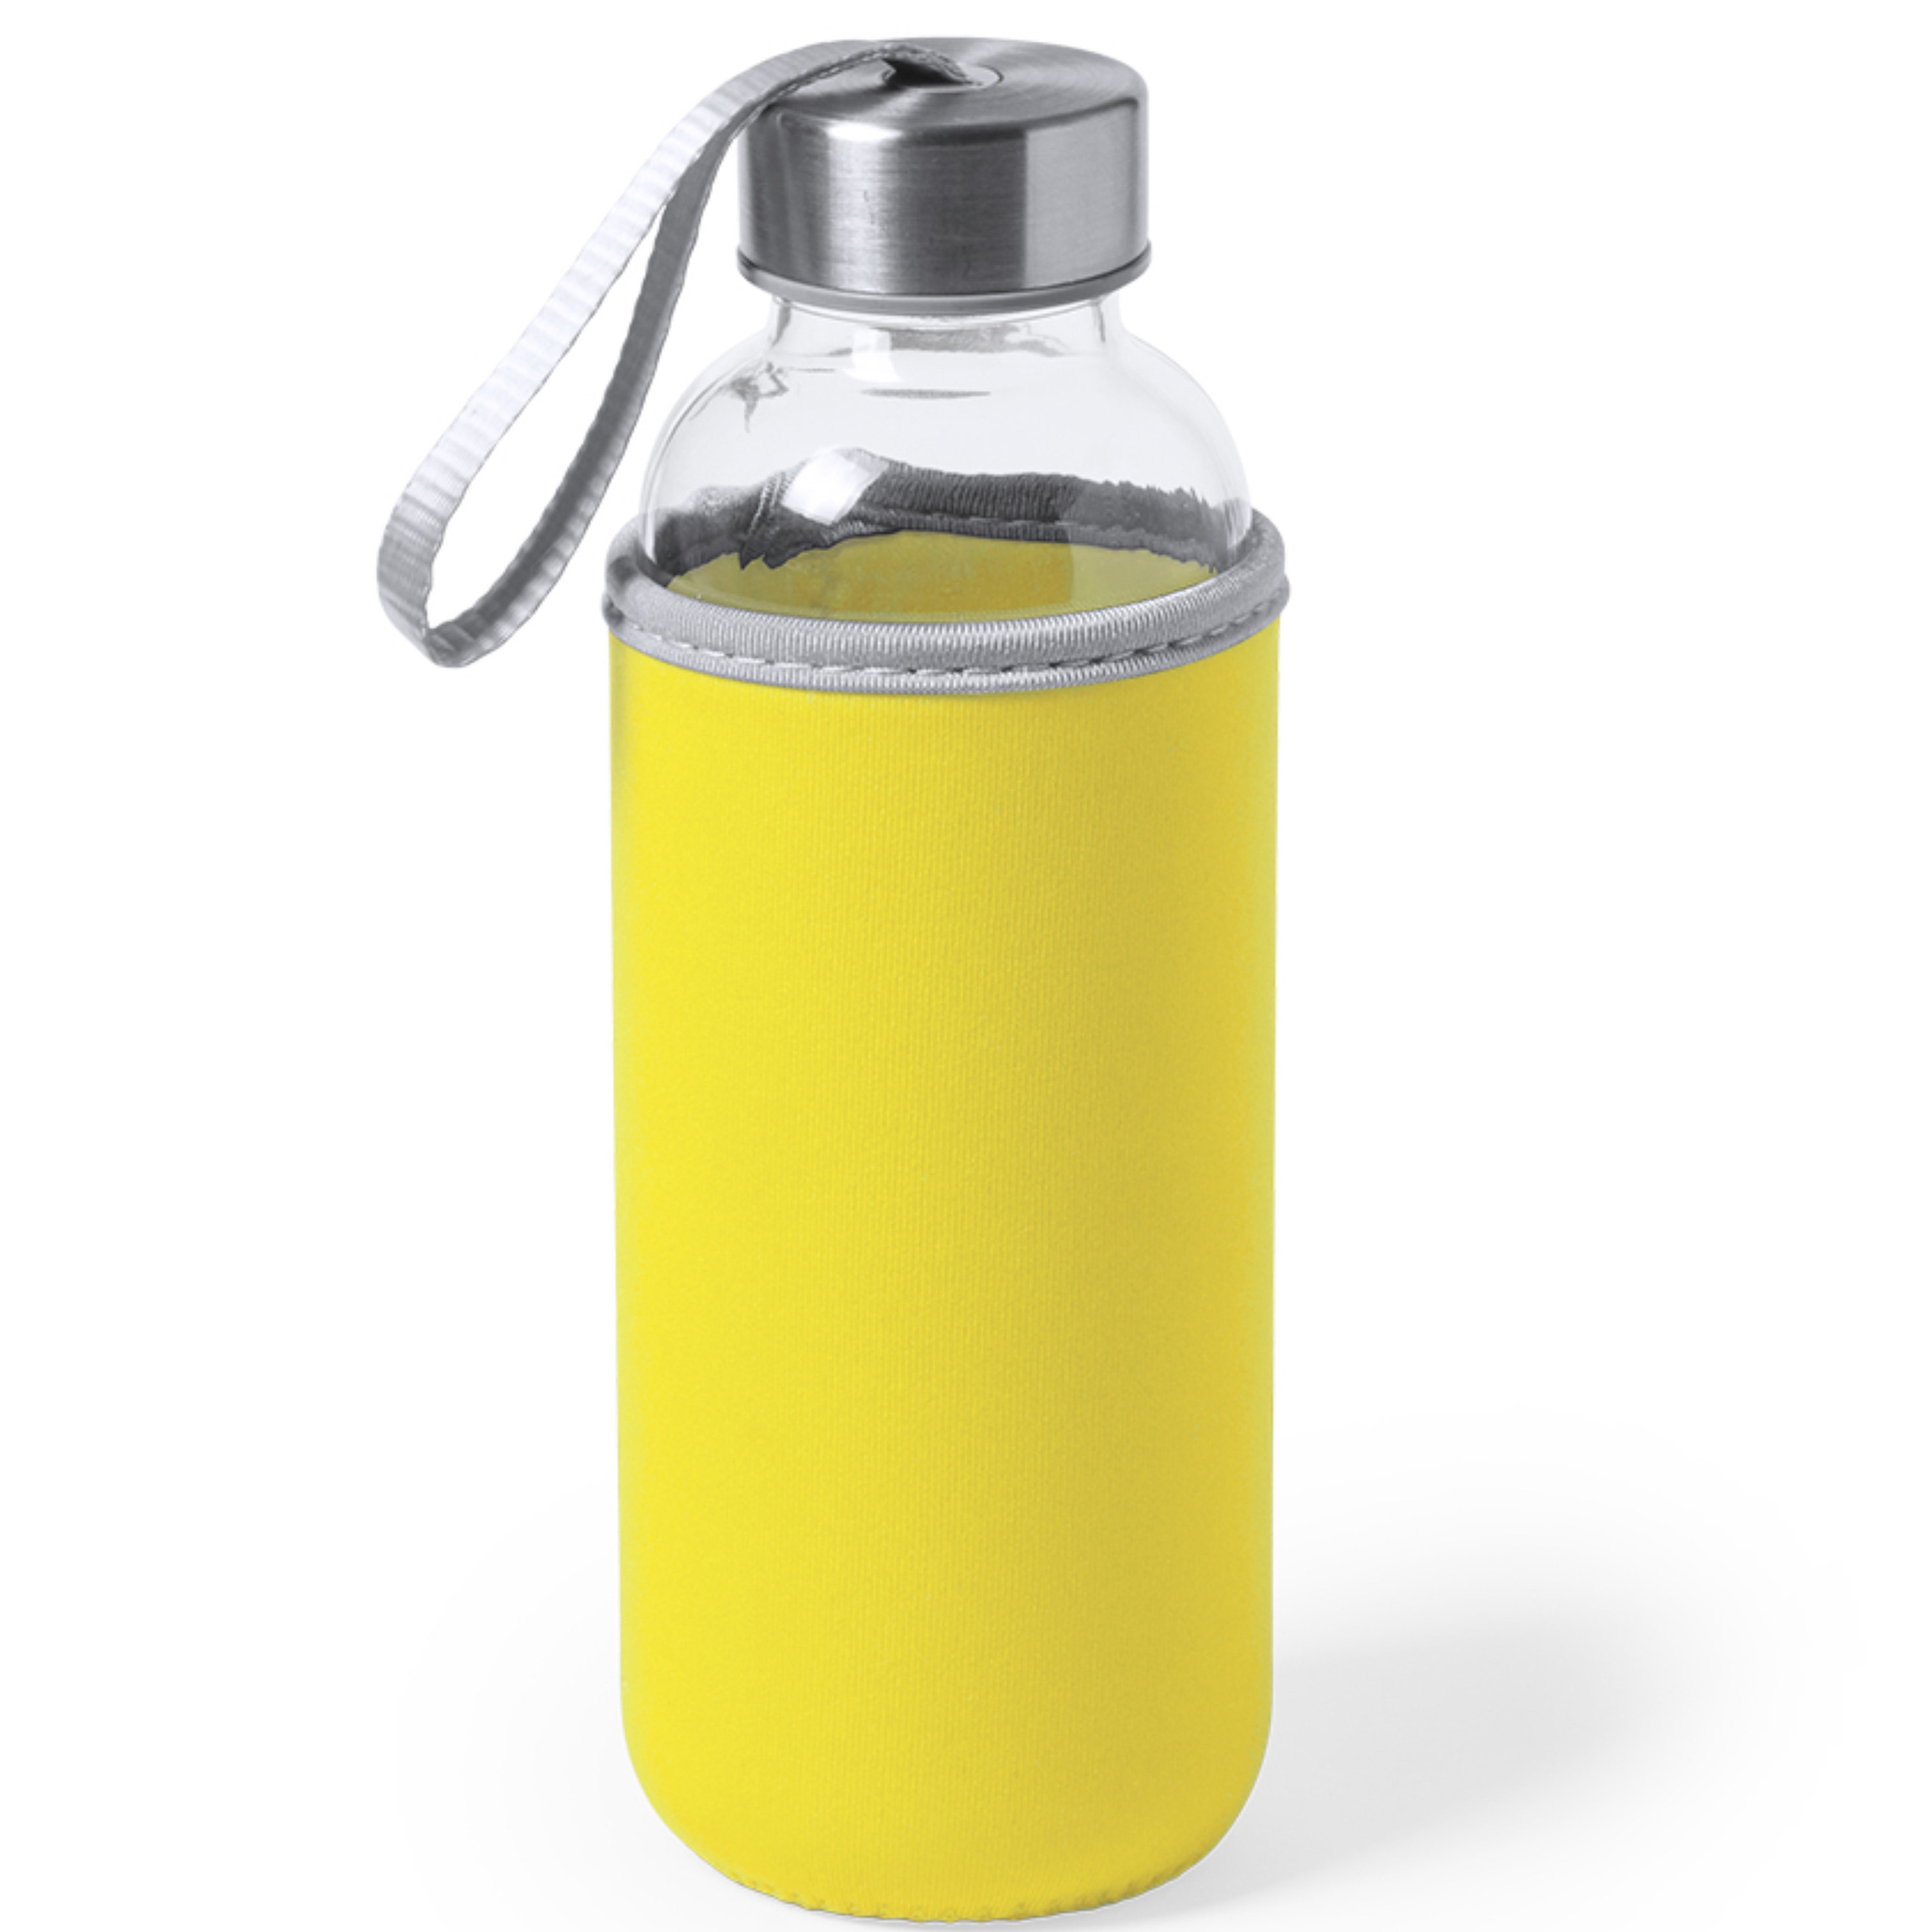 Glazen waterfles-drinkfles met gele softshell bescherm hoes 420 ml